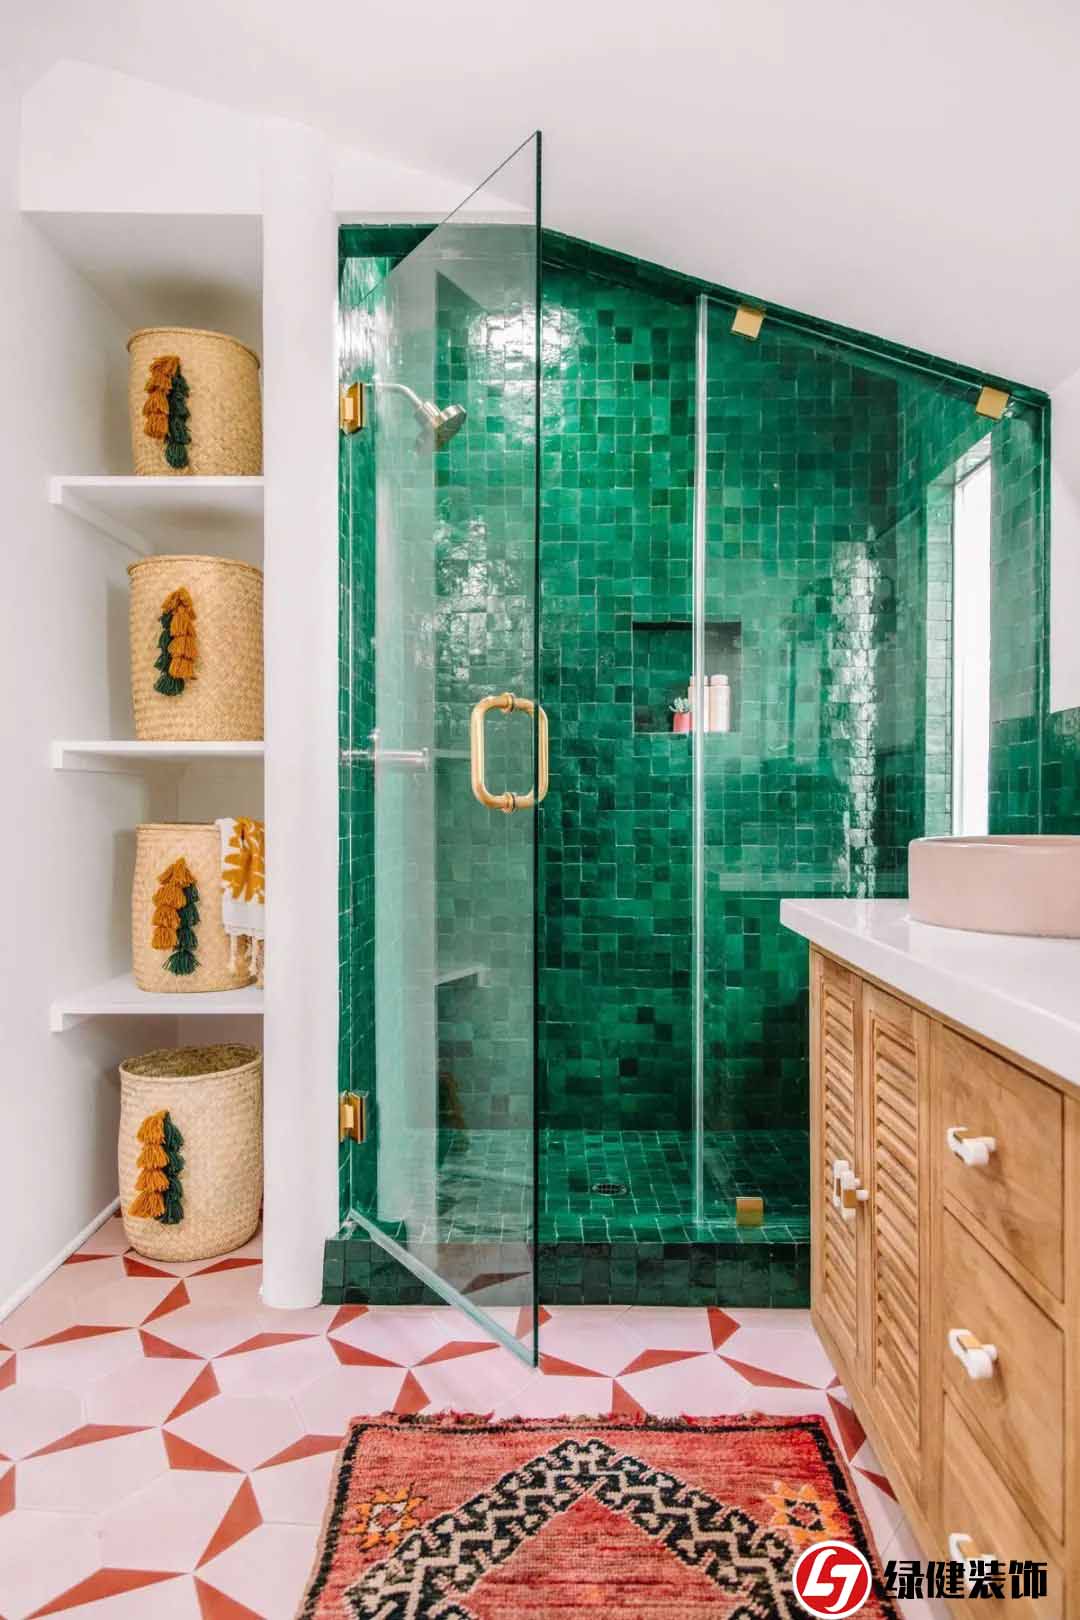 【六安绿健装饰】——玻璃淋浴门设计创意带来浴室新体验